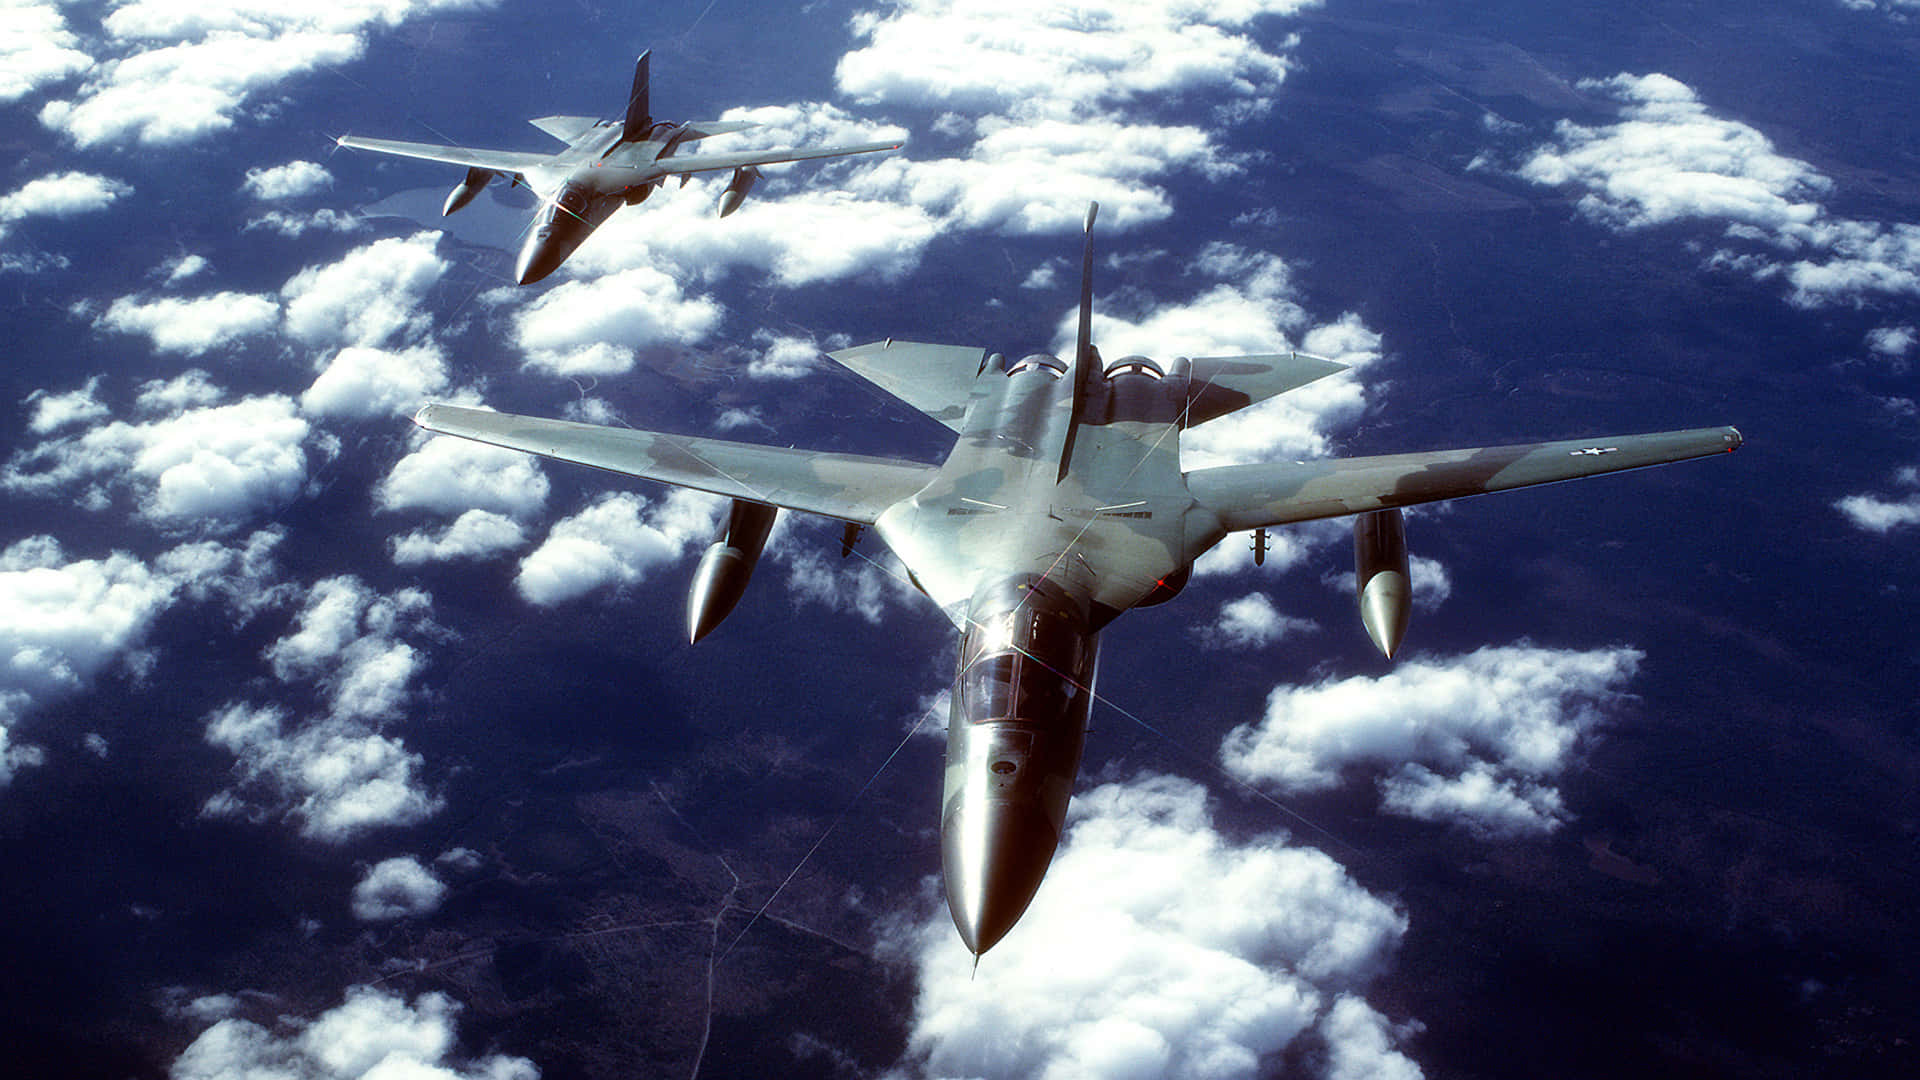 Fondode Pantalla De Aviones F-111 Aardvark En Alta Definición 1080p